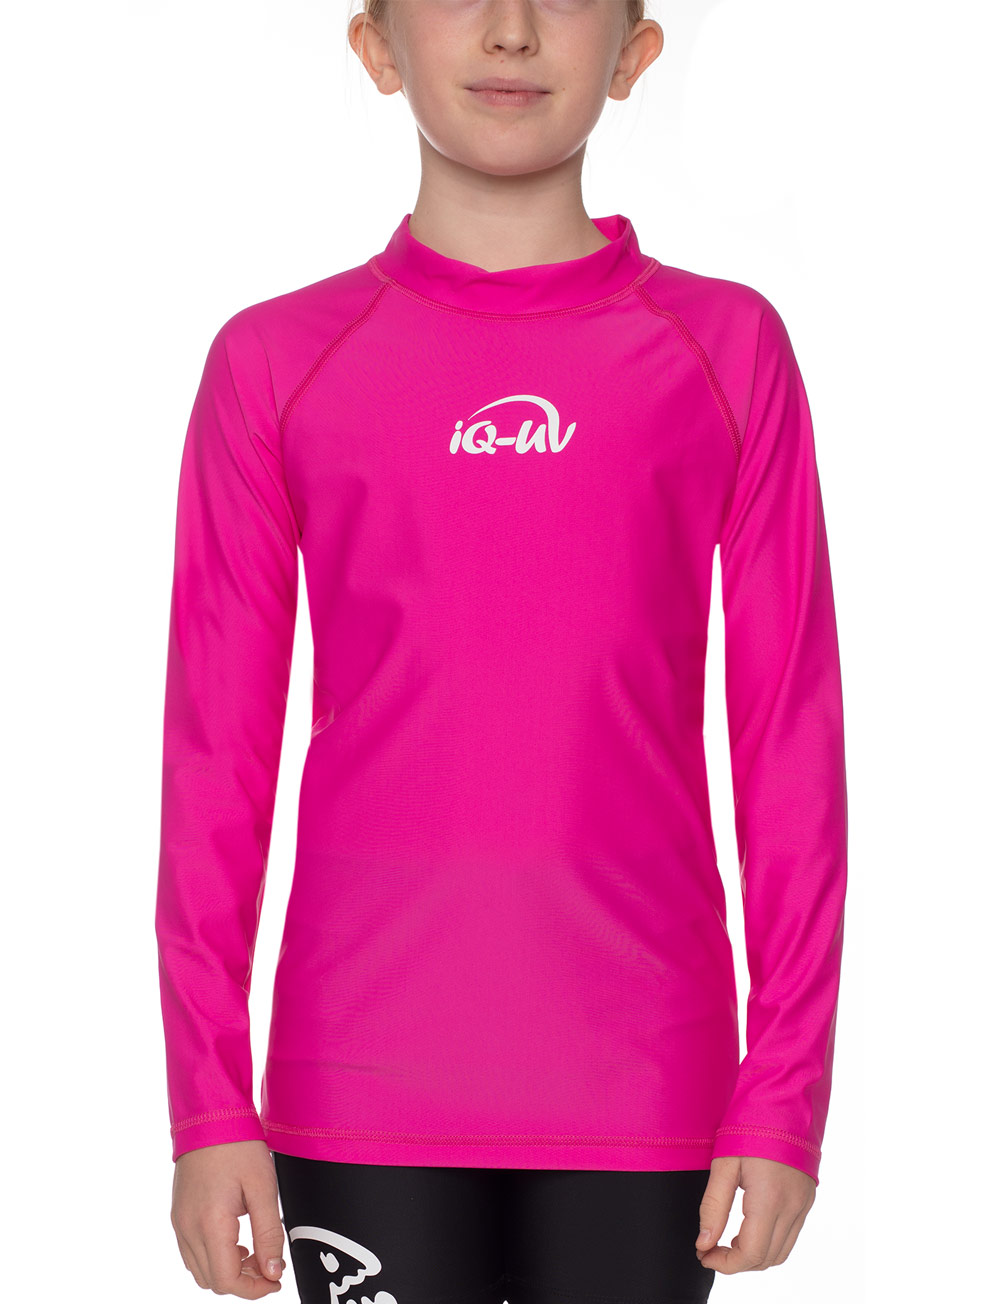 UV Sonnenschutz T-Shirt langarm elastisch UV Standard 801 und TüV geprüft Kinder pink